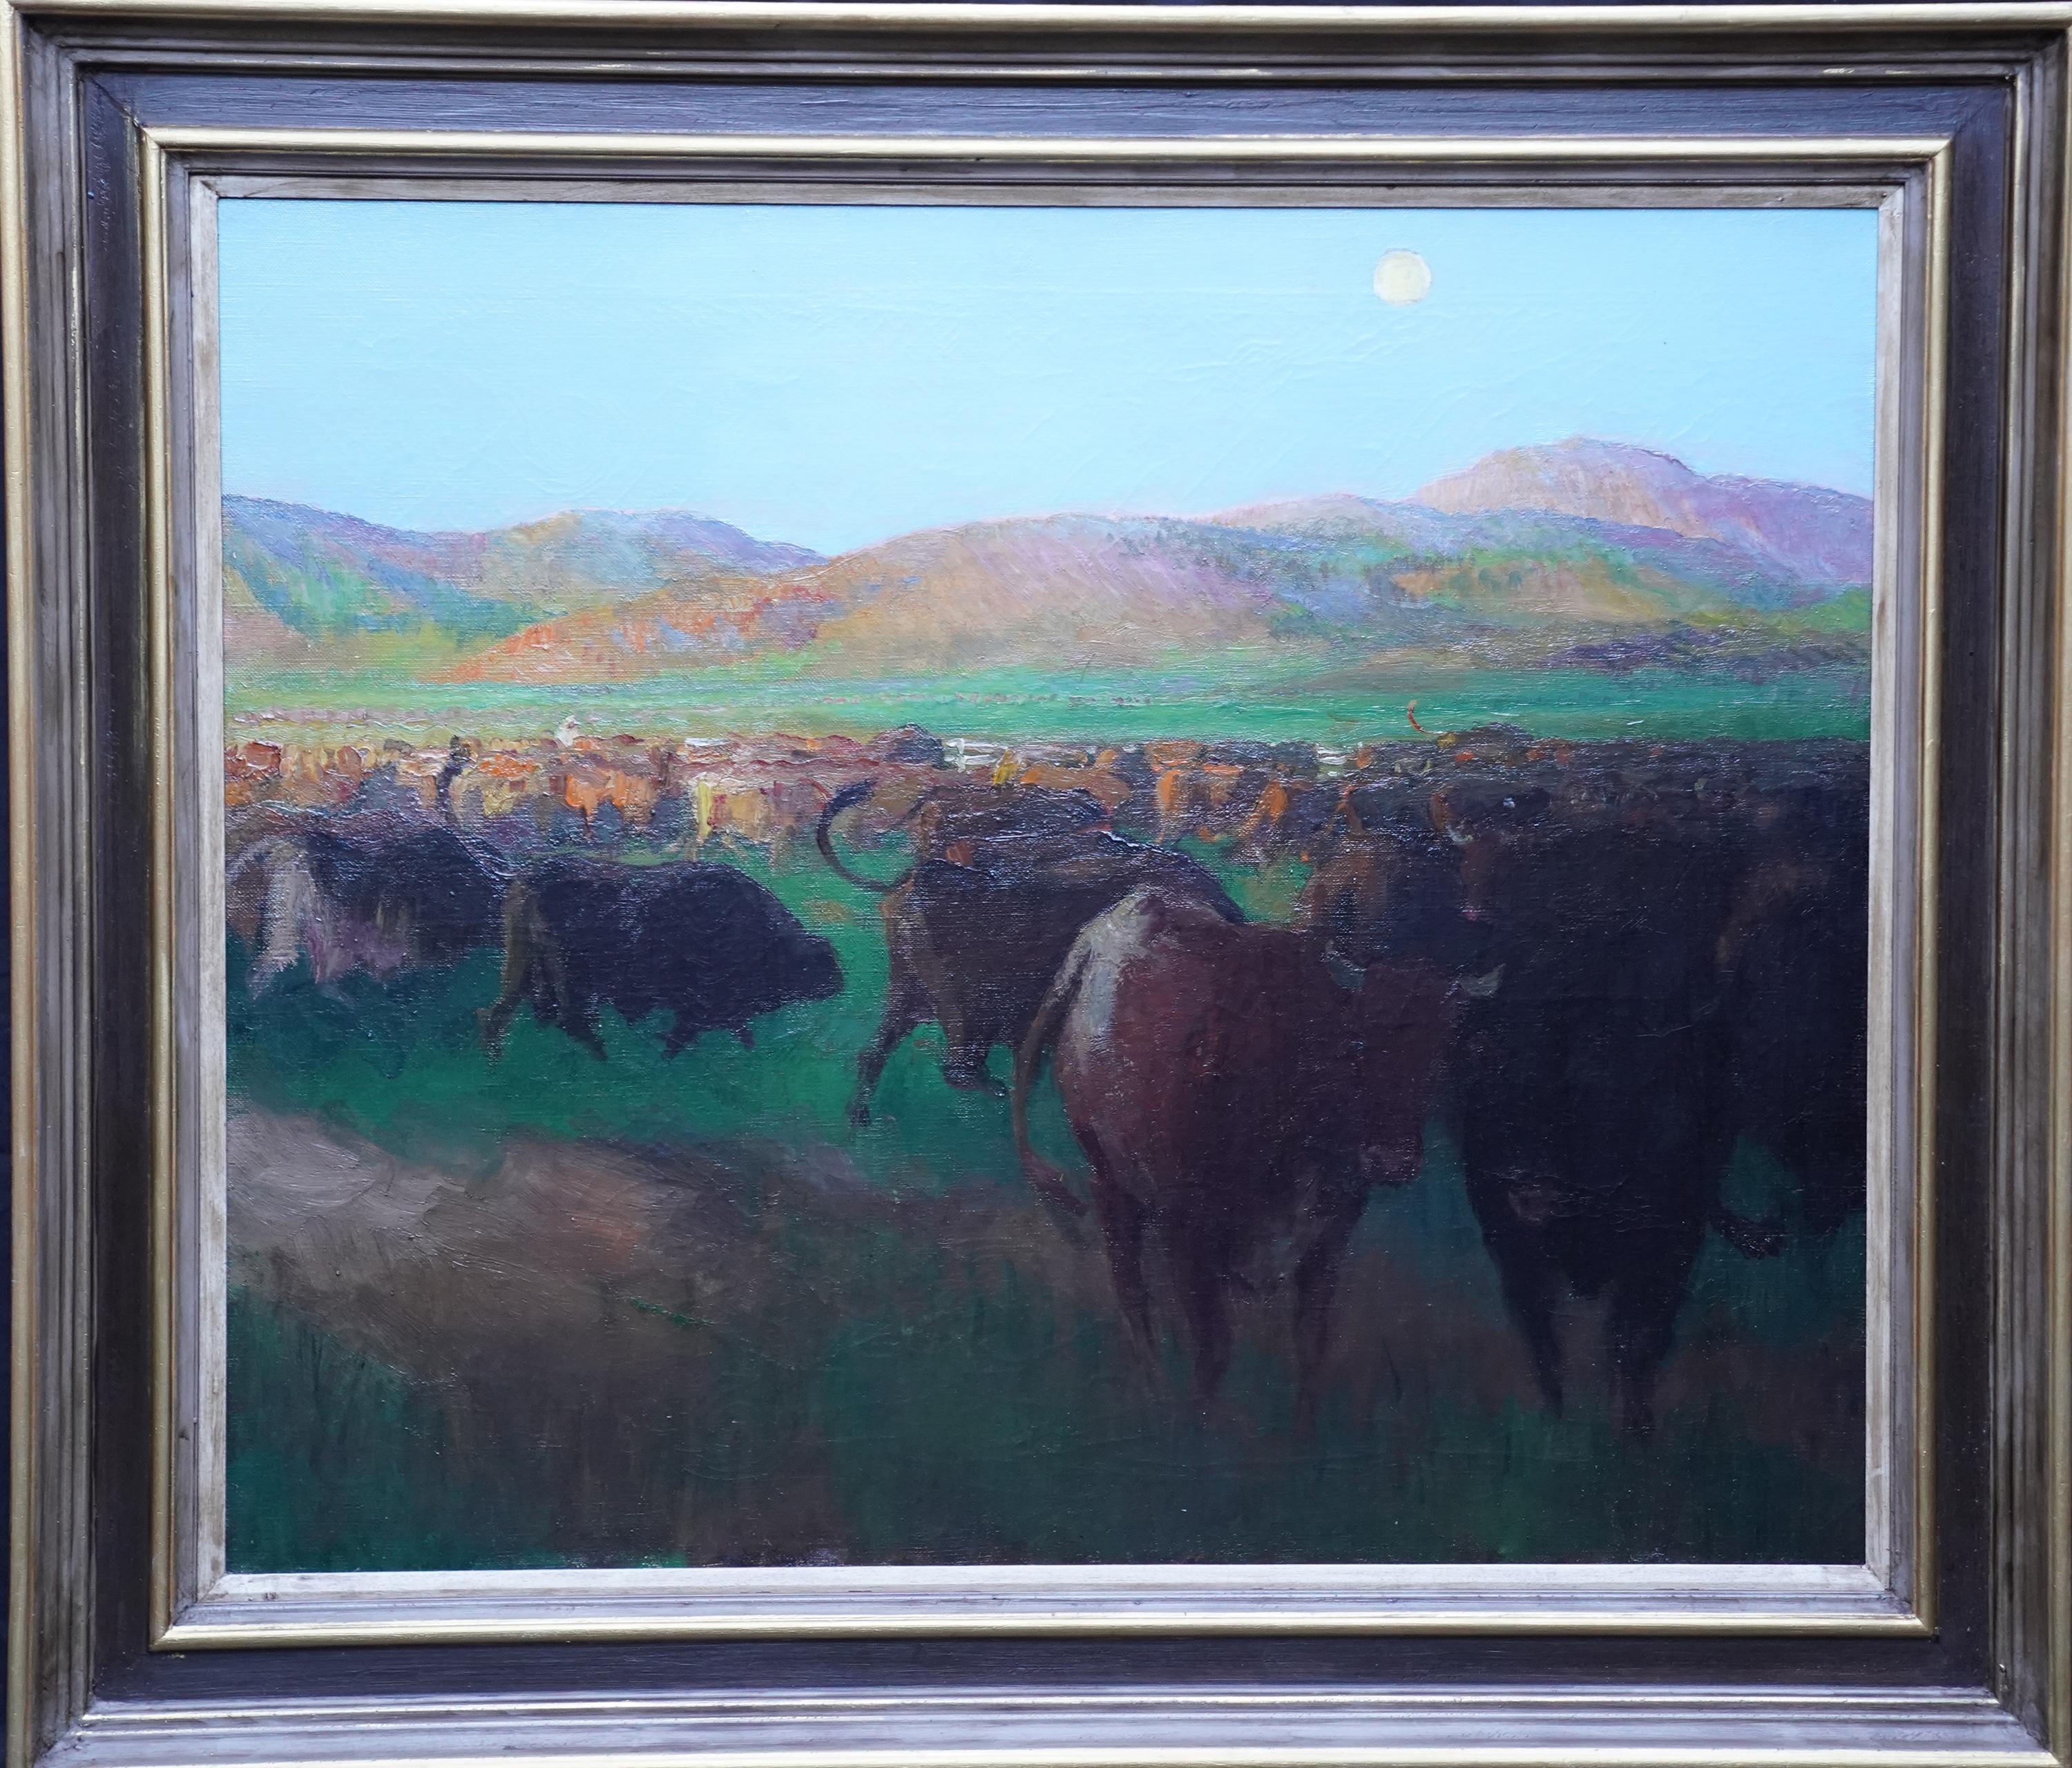 Spencer Pryse Landscape Painting – Rinder in einer Landschaft Nordafrikas – postimpressionistisches Ölgemälde der britischen 20er Jahre